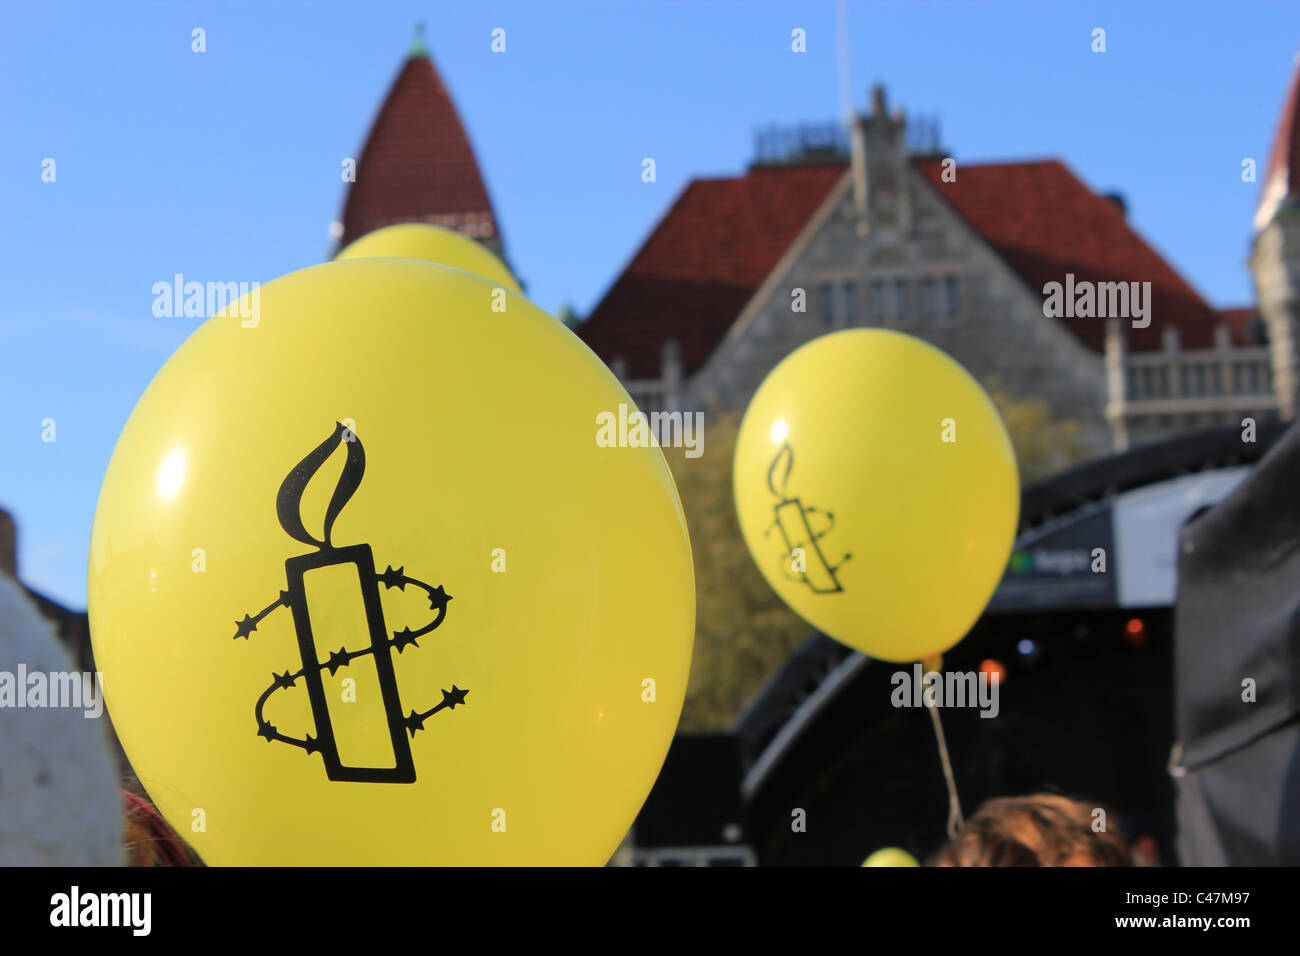 Palloncini gialli immagini e fotografie stock ad alta risoluzione - Alamy